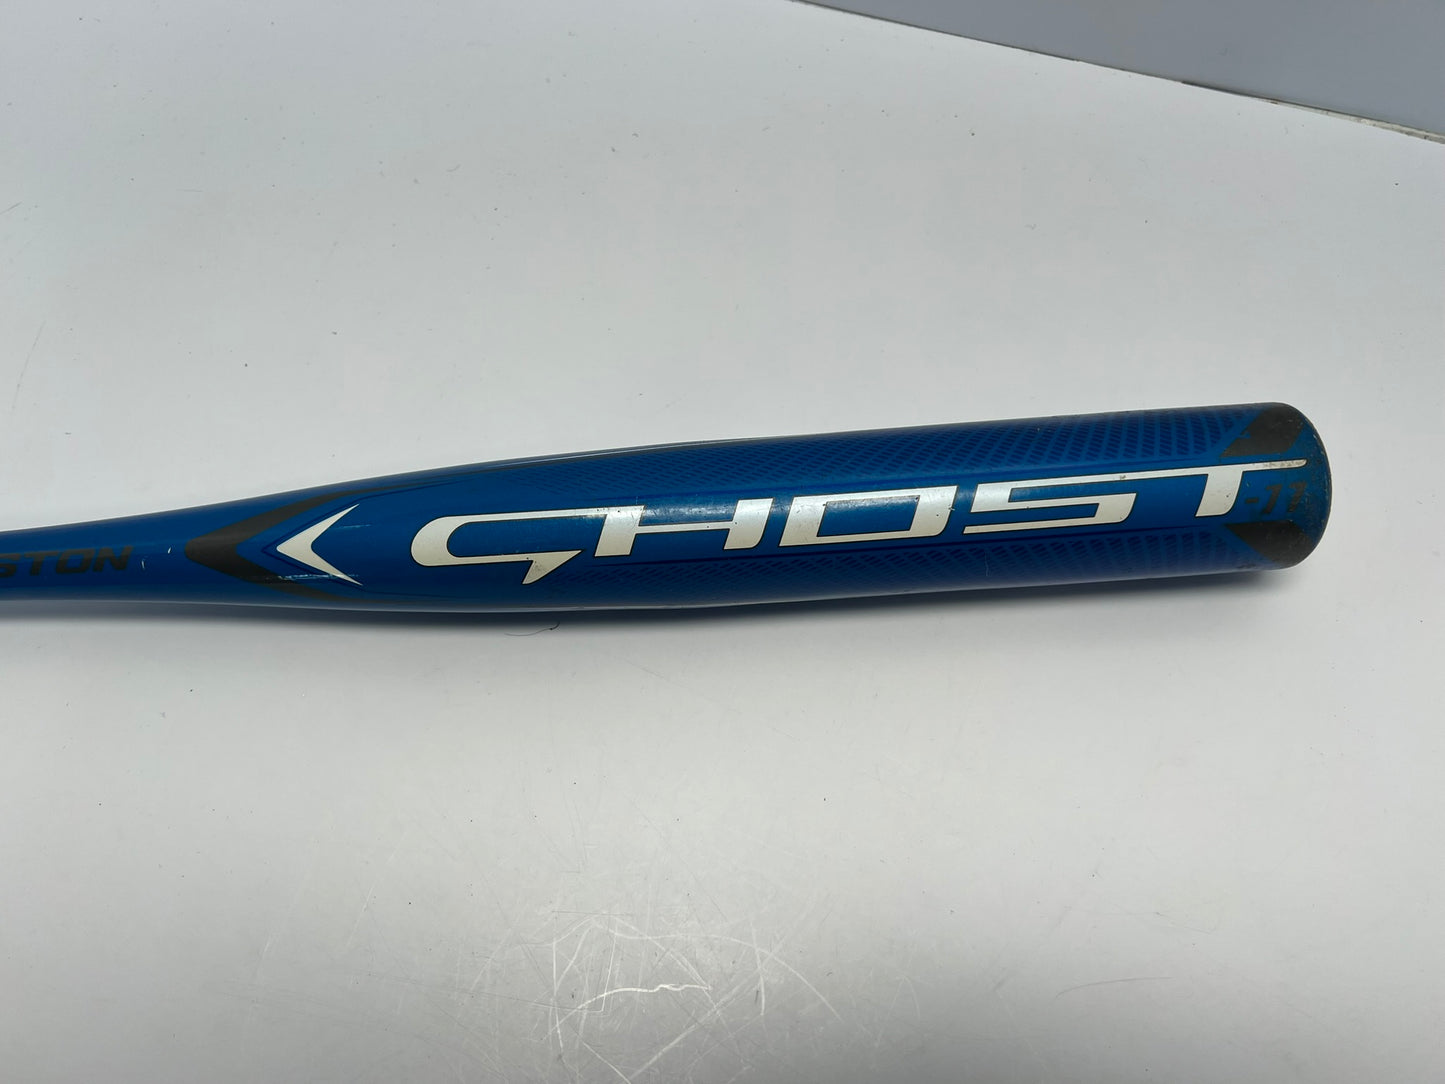 Baseball Bat 29 inch 18 oz Easton Ghost Softball Grey Blue